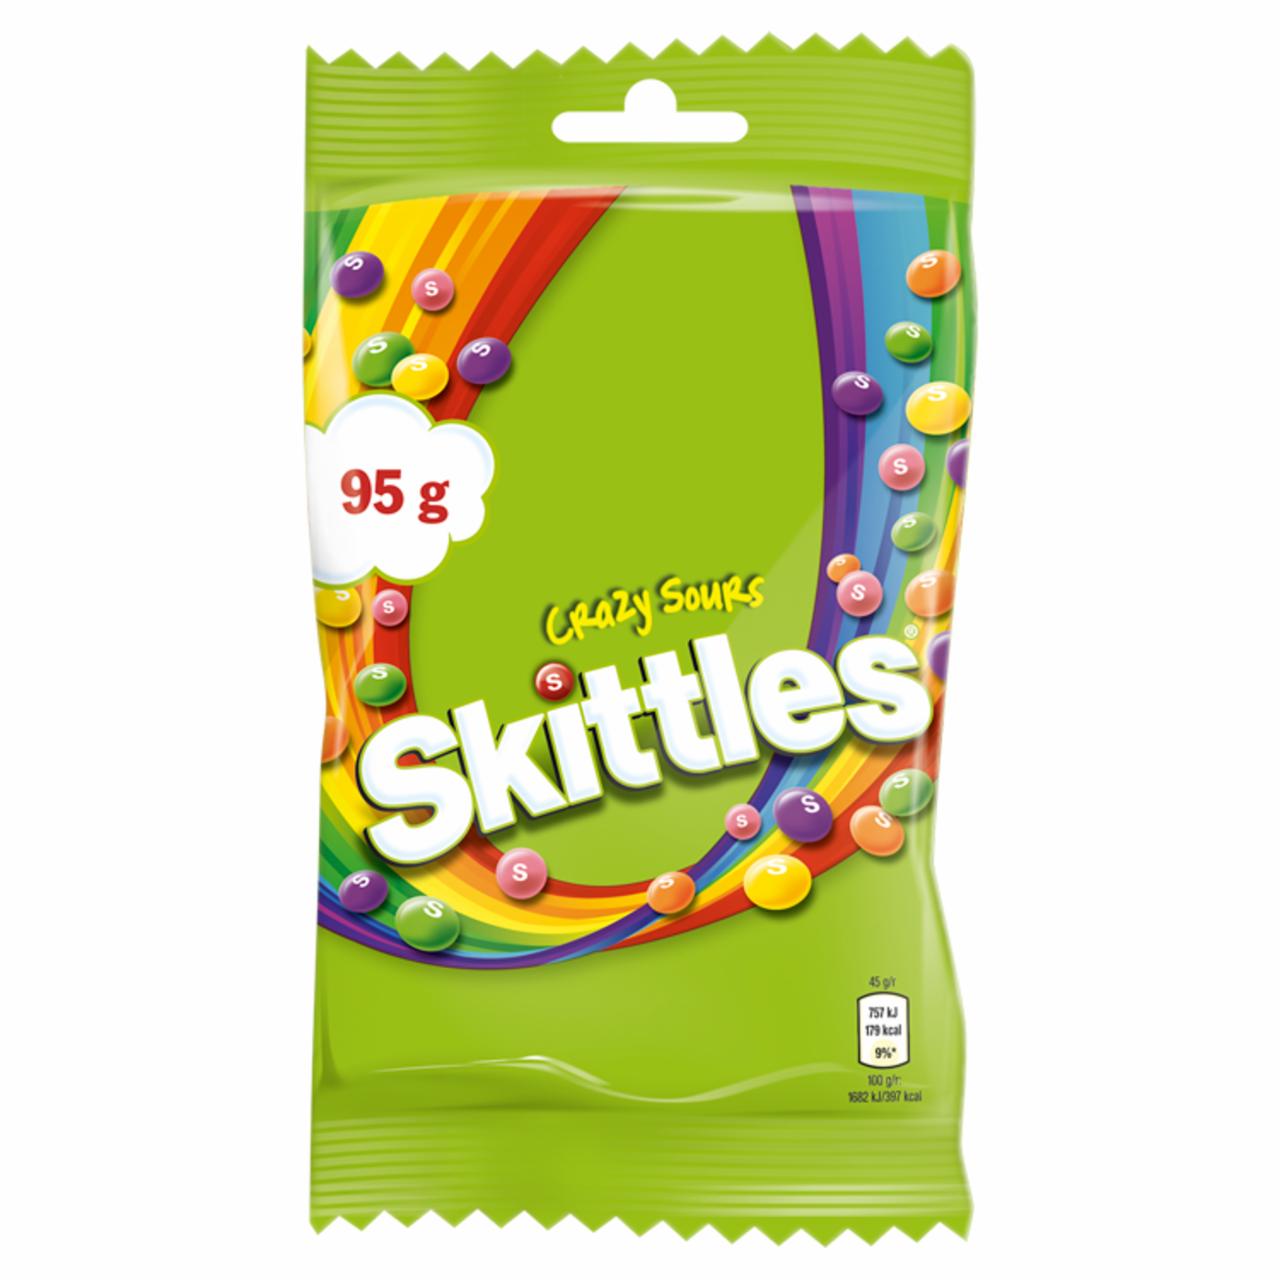 Zdjęcia - Skittles Crazy Sours Cukierki do żucia 95 g